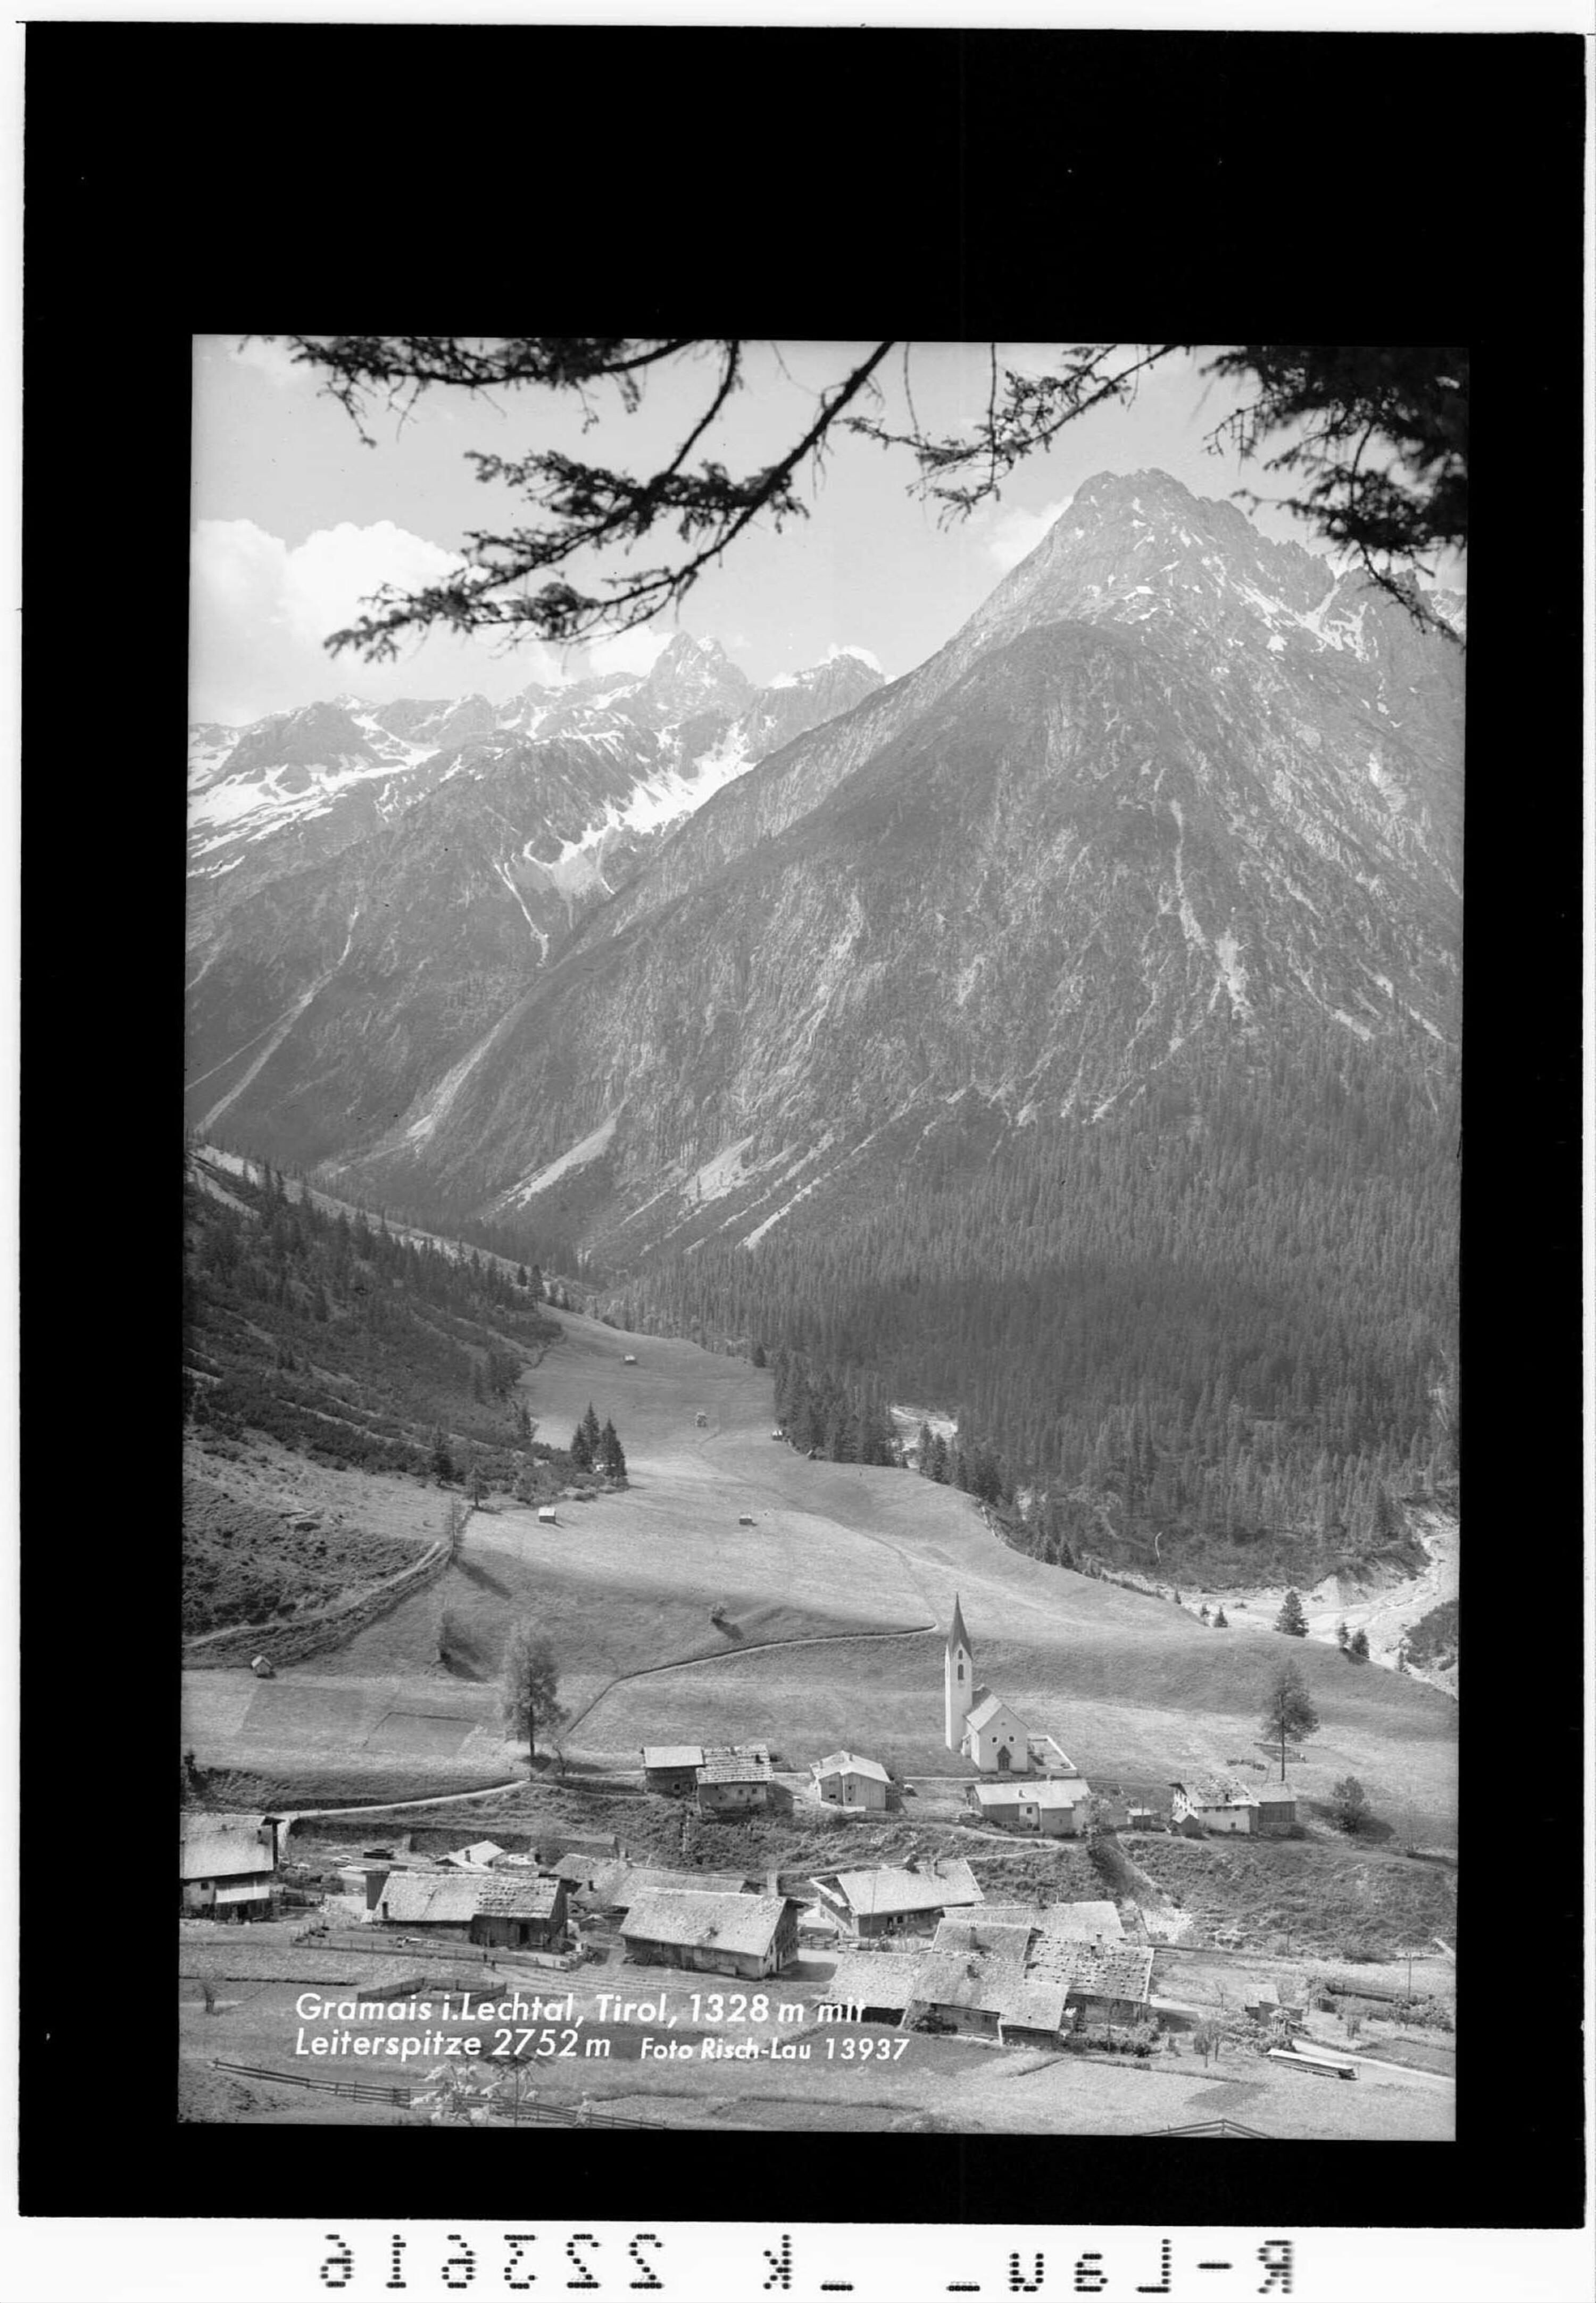 Gramais in Tirol 1328 m mit Leiterspitze 2752 m></div>


    <hr>
    <div class=